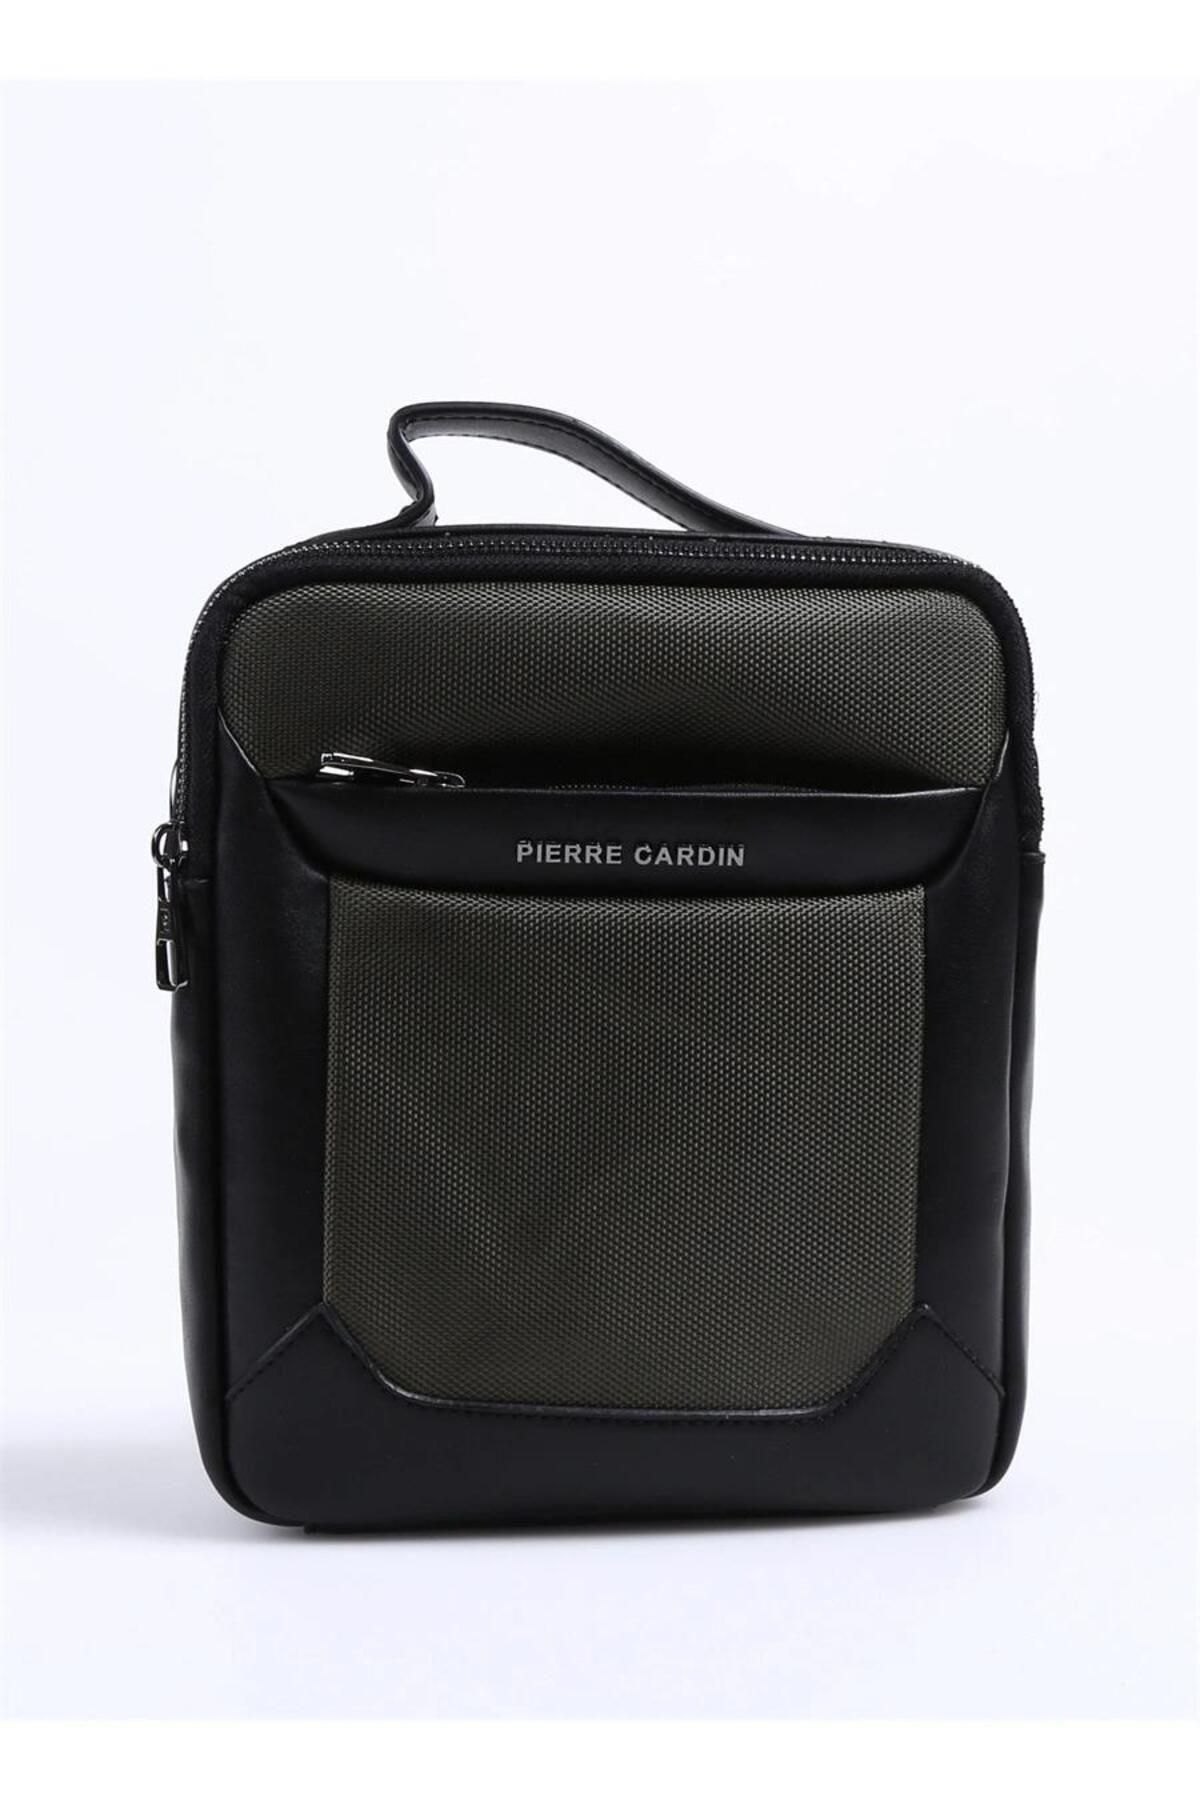 Pierre Cardin Cross Bag Green PC001196